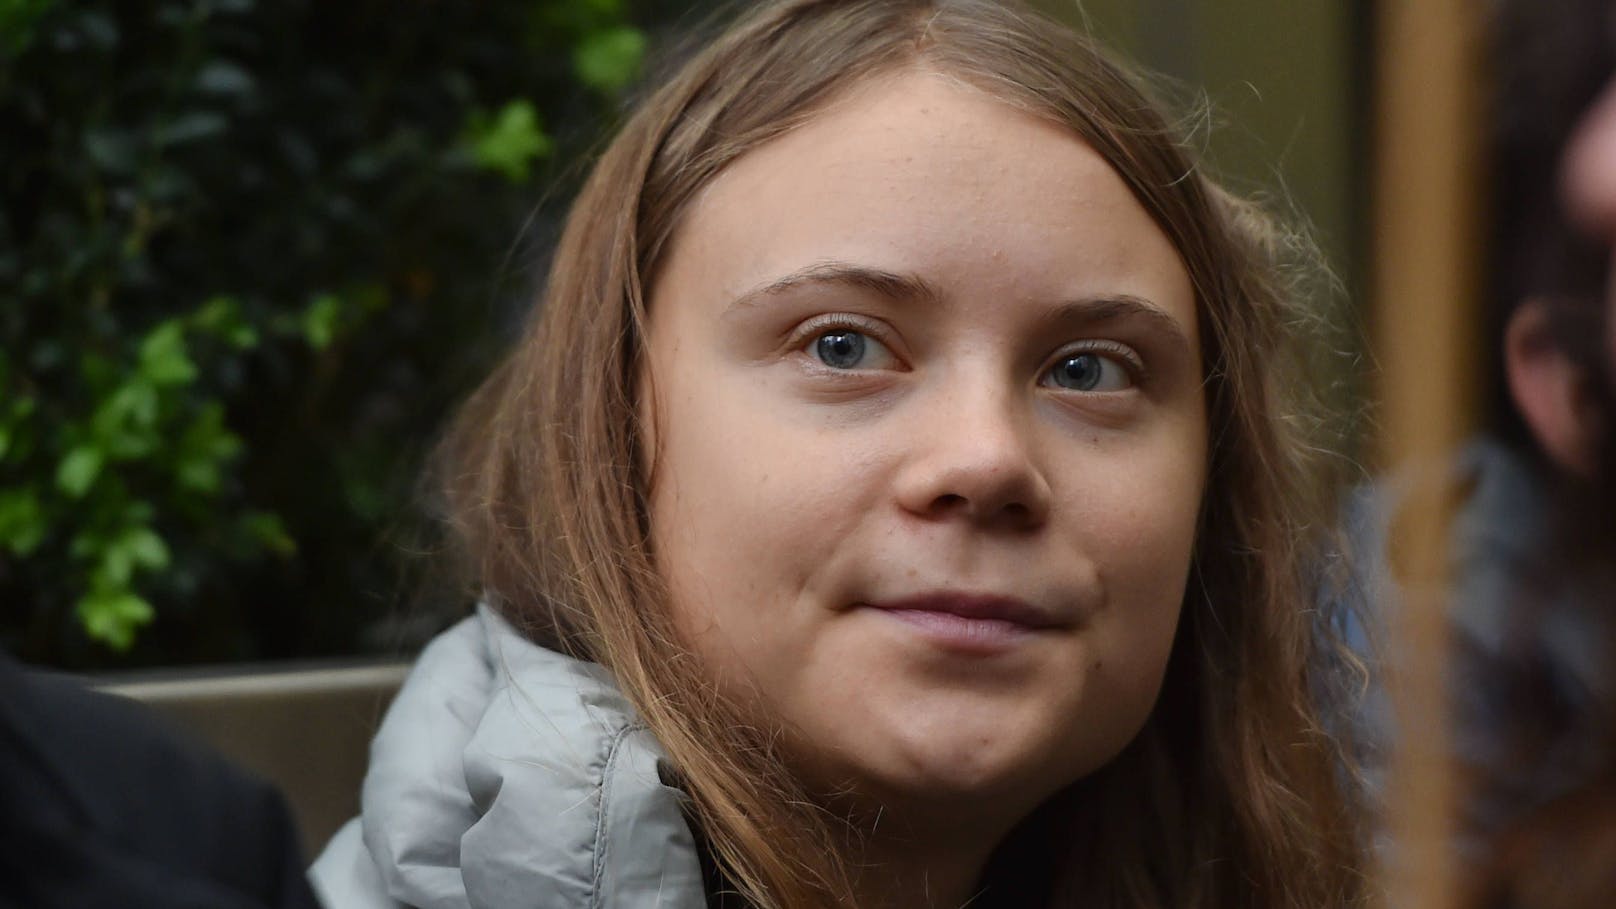 Das Gesicht einer Umwelt-Bewegung: Greta Thunberg